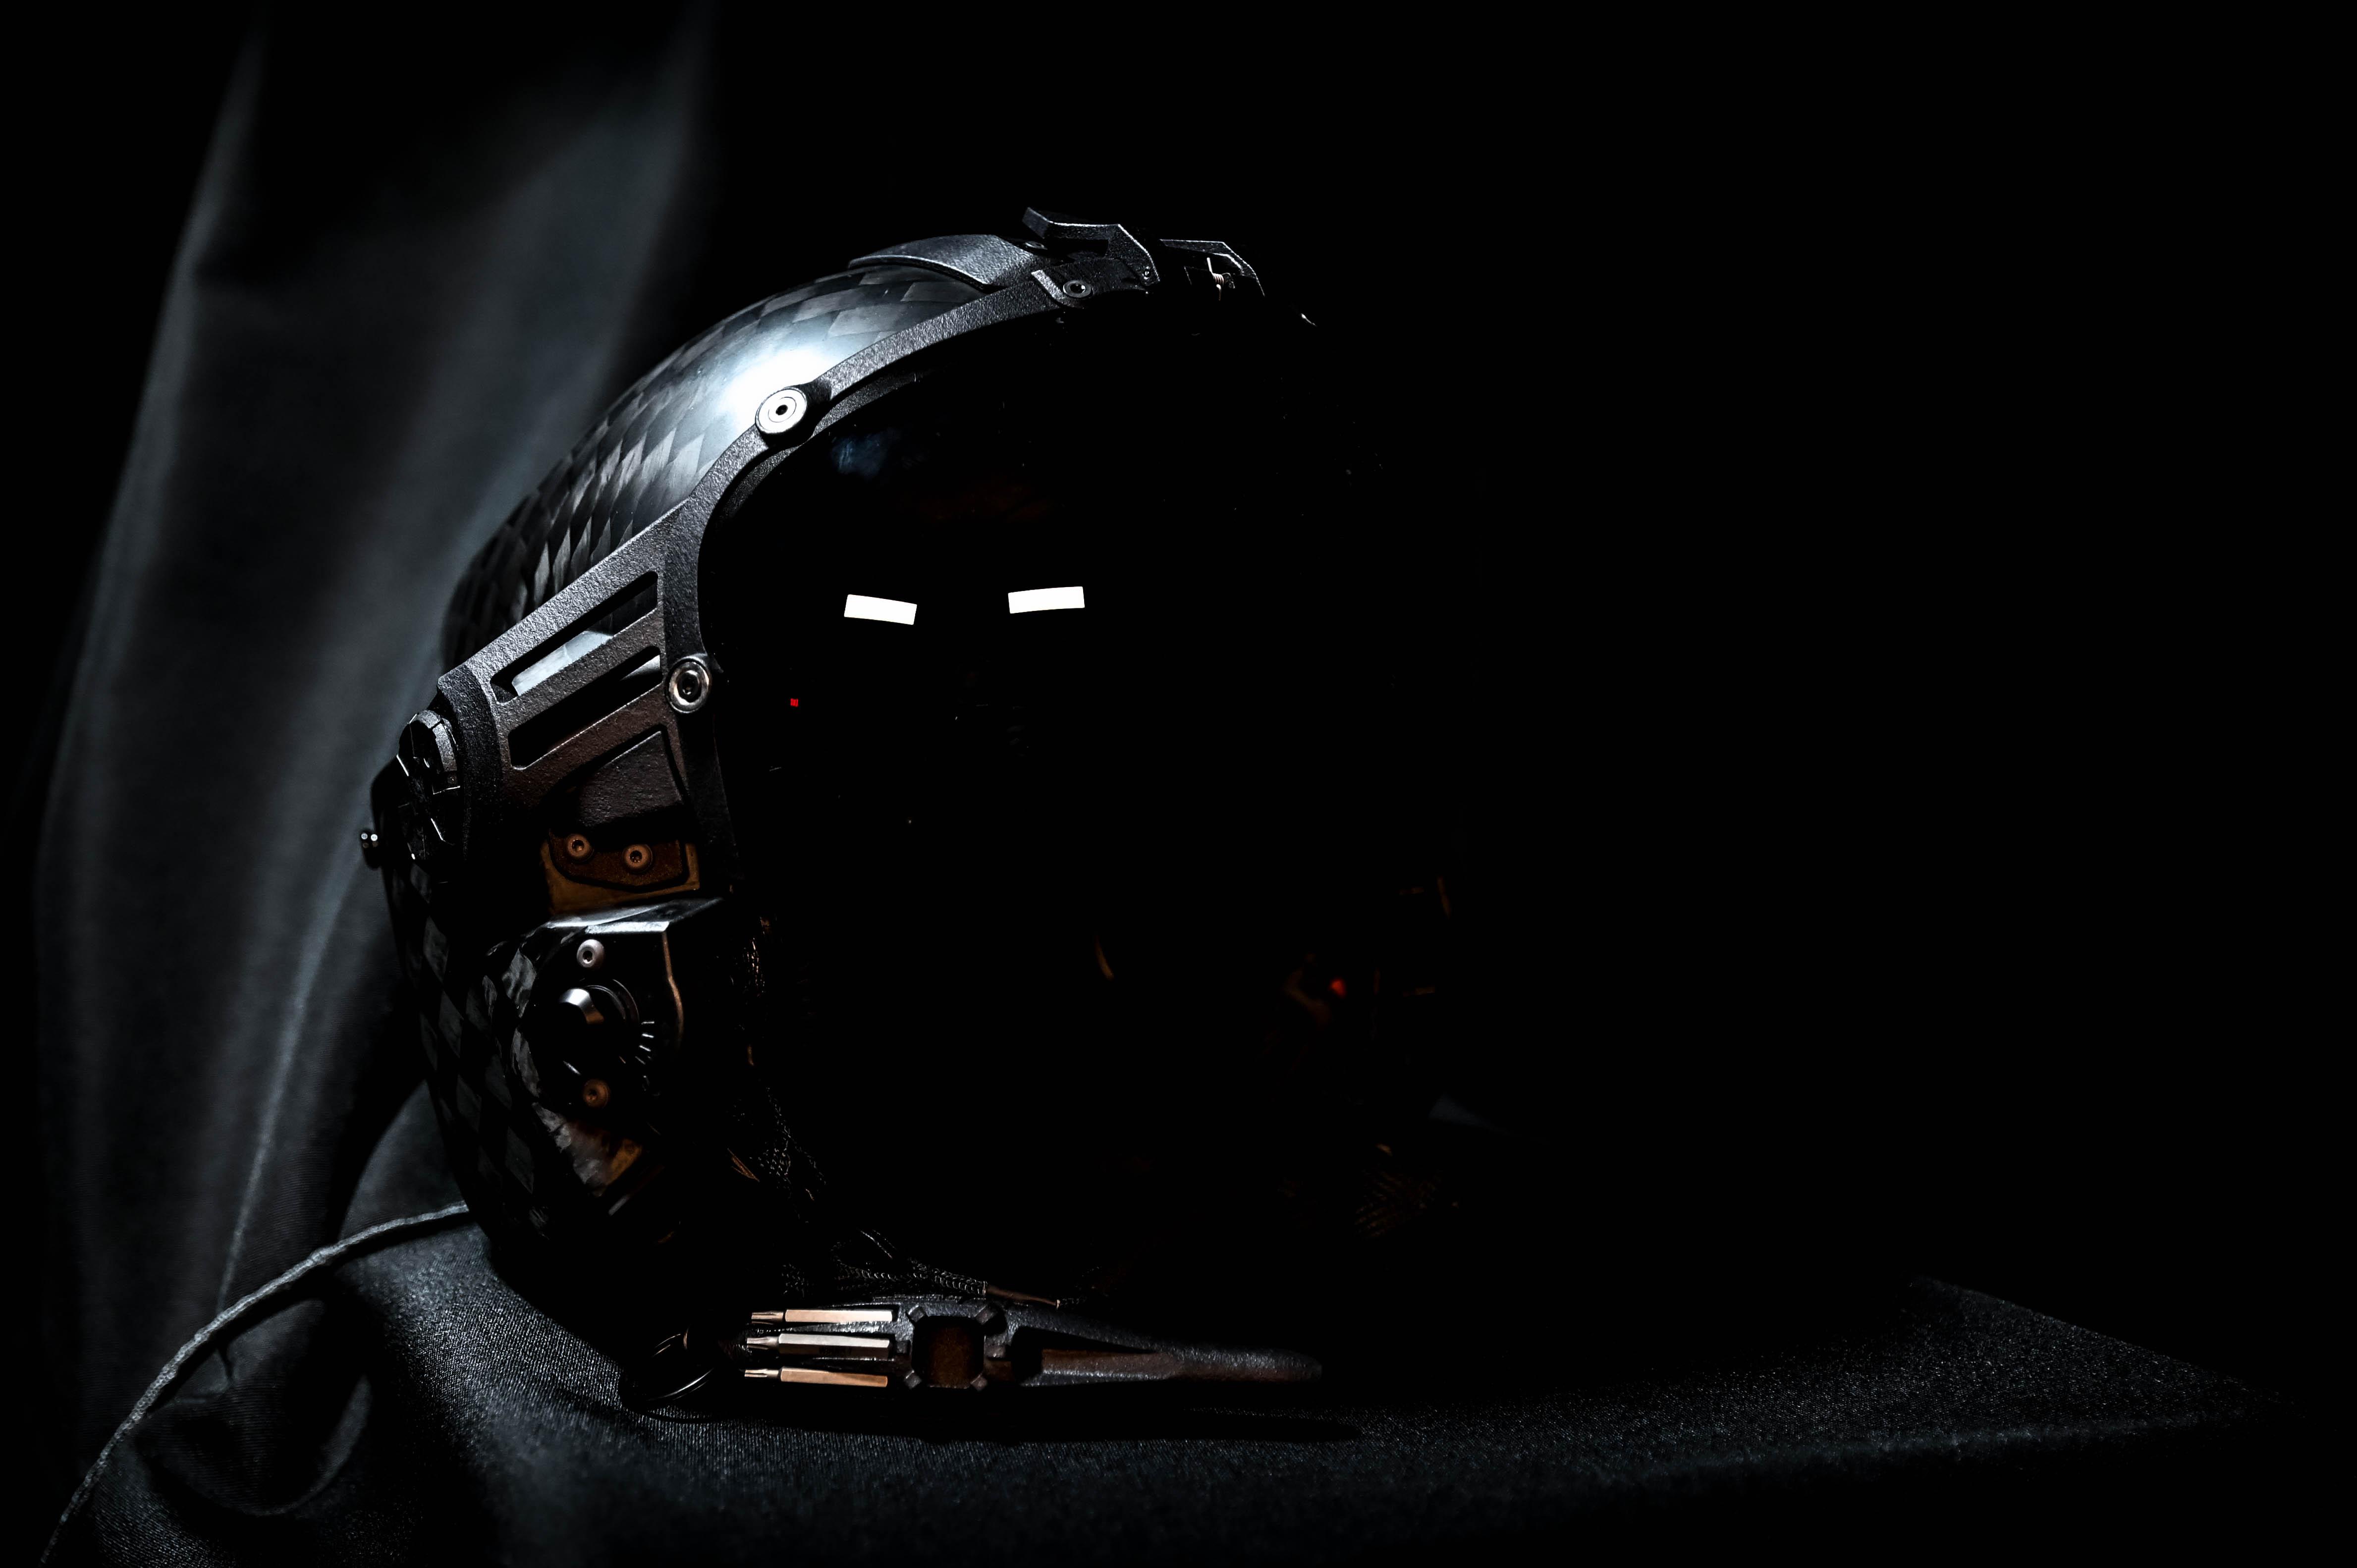 LIFT Airborne Technologies helmet prototype